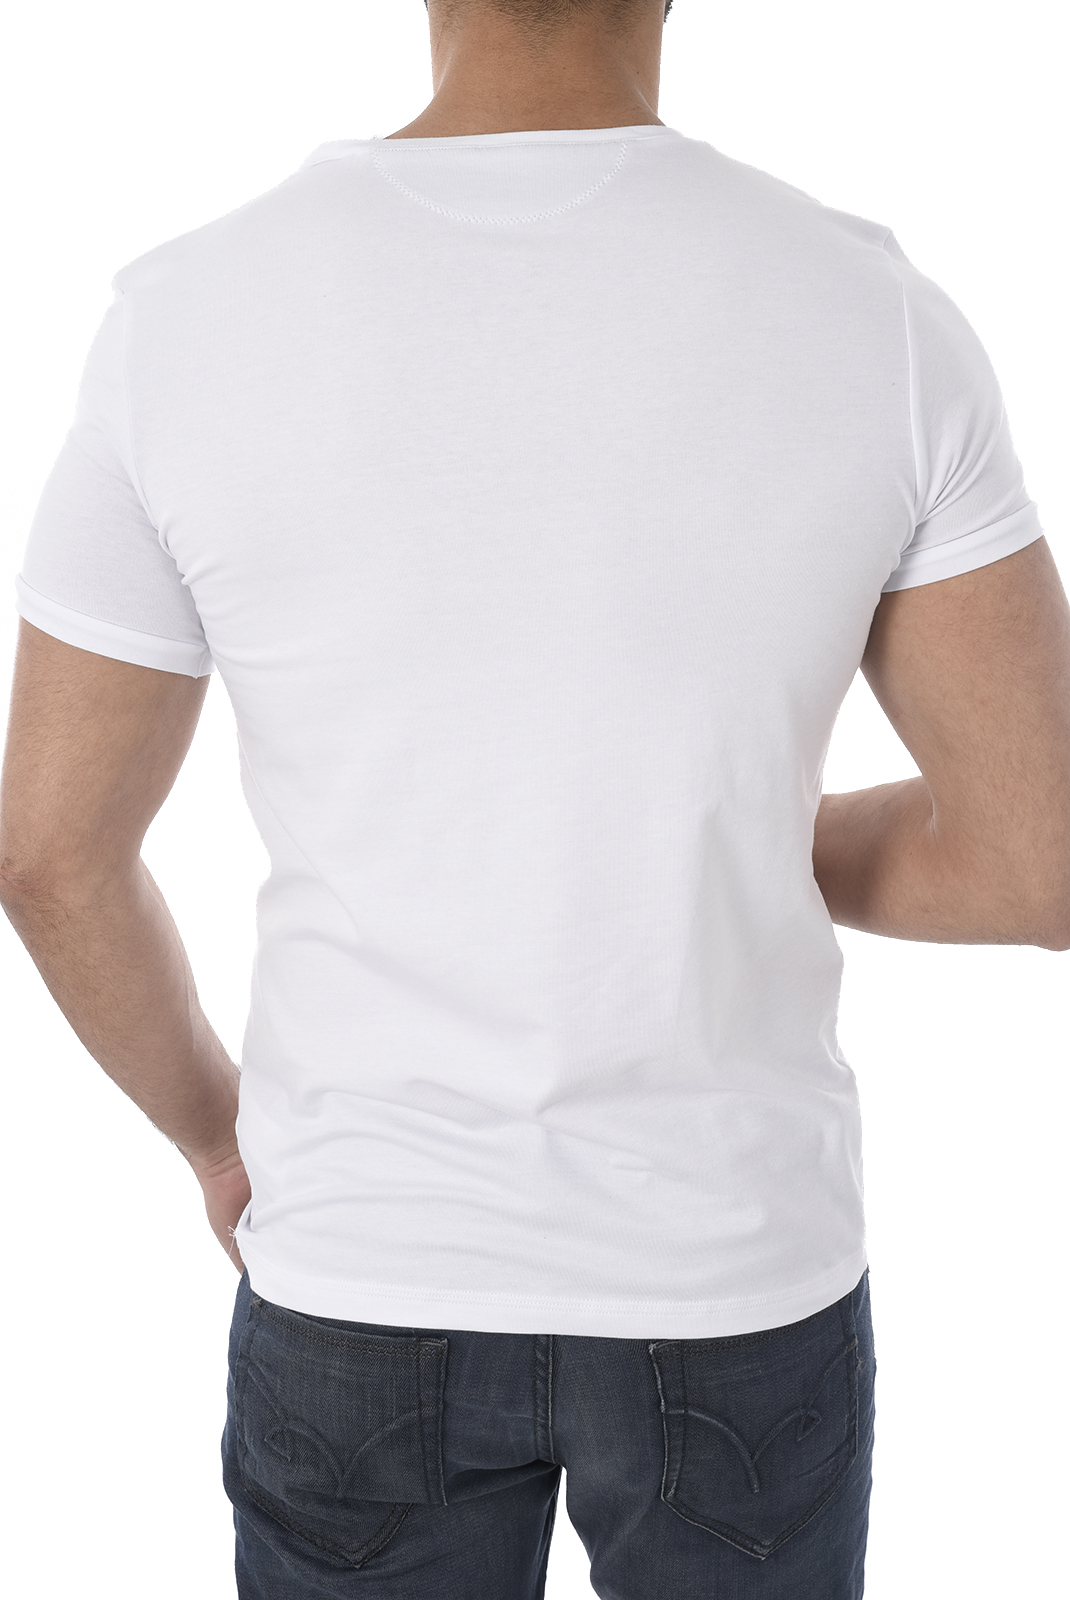 T-Shirt blanc homme Guess U82m00